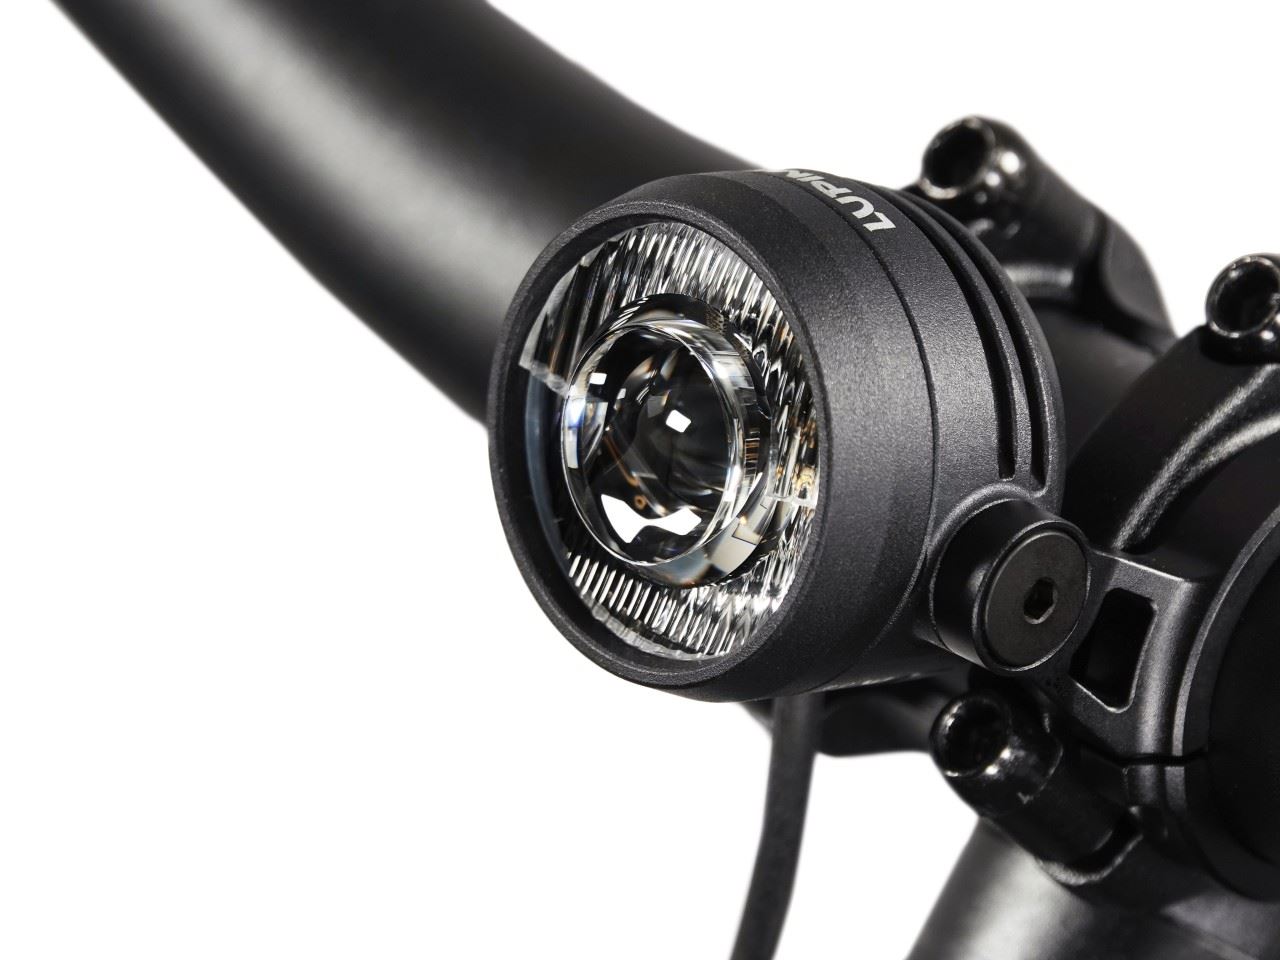 Produktbild von Lupine SL Nano für E-Bikes mit Shimano Motor, E-Bike Beleuchtung mit 1000 Lumen Fernlicht, Lenkerhalter 35mm + Kabelfernbedienung